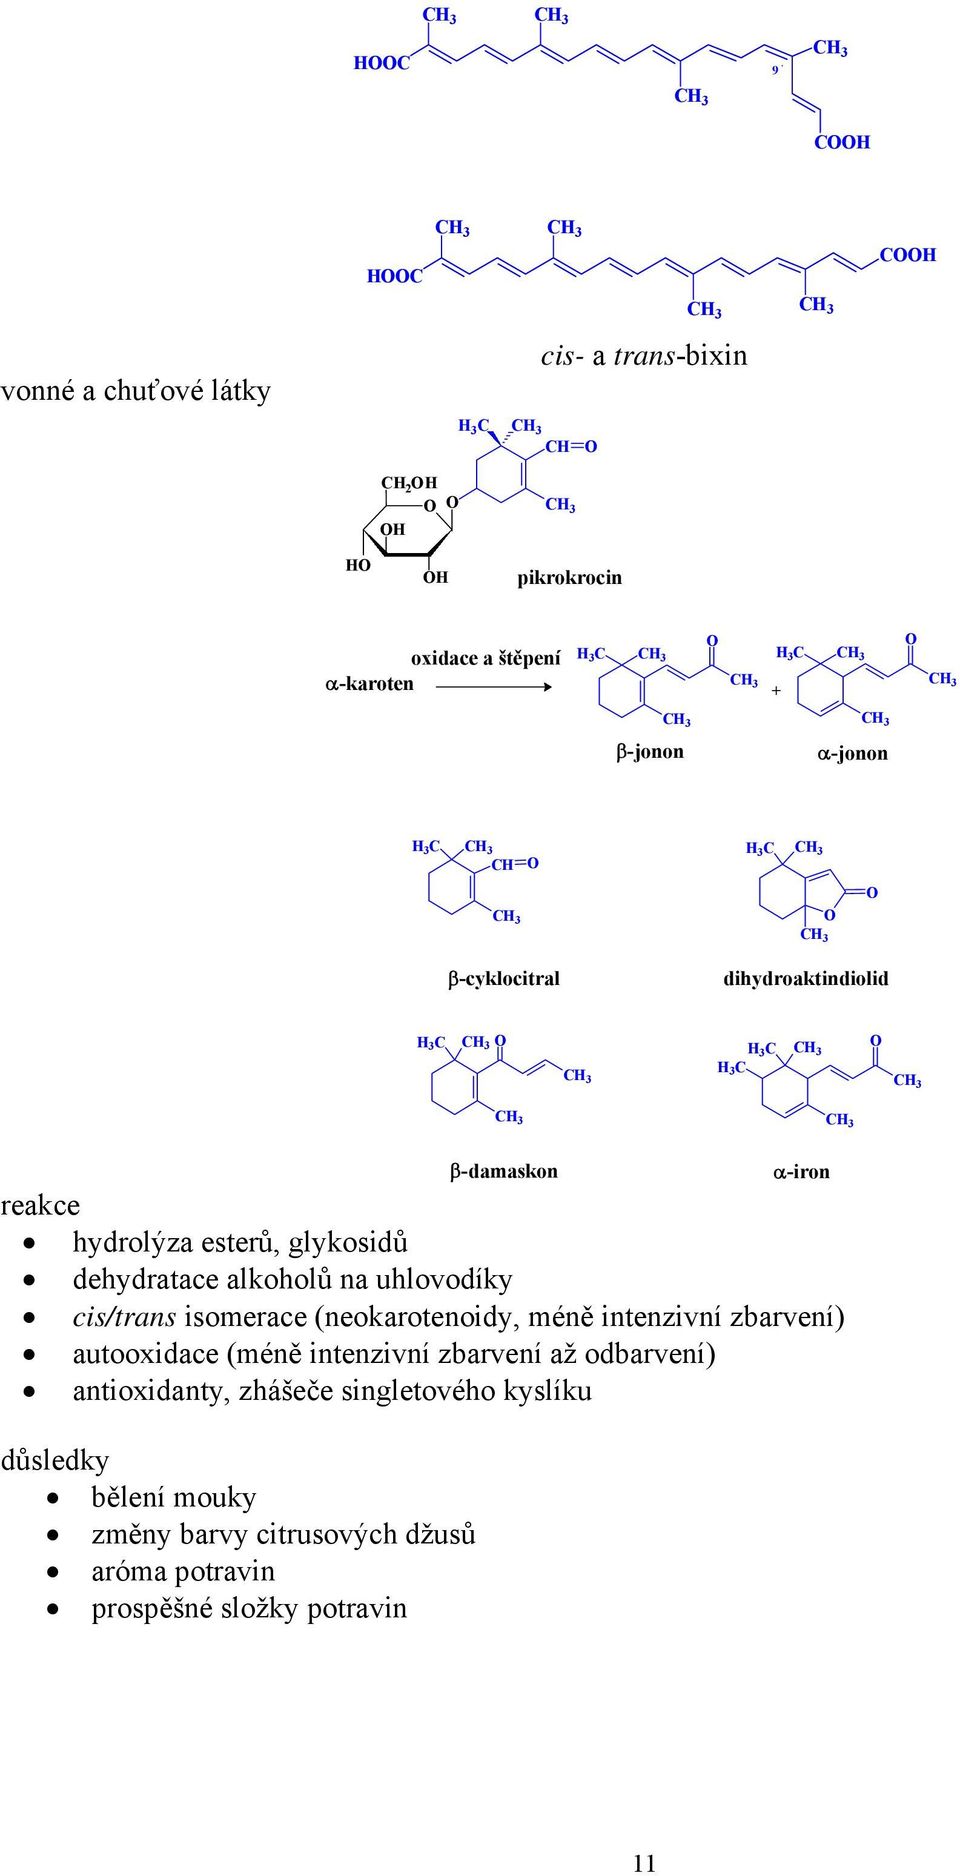 cis/trans isomerace (neokarotenoidy, méně intenzivní zbarvení) autooxidace (méně intenzivní zbarvení až odbarvení)